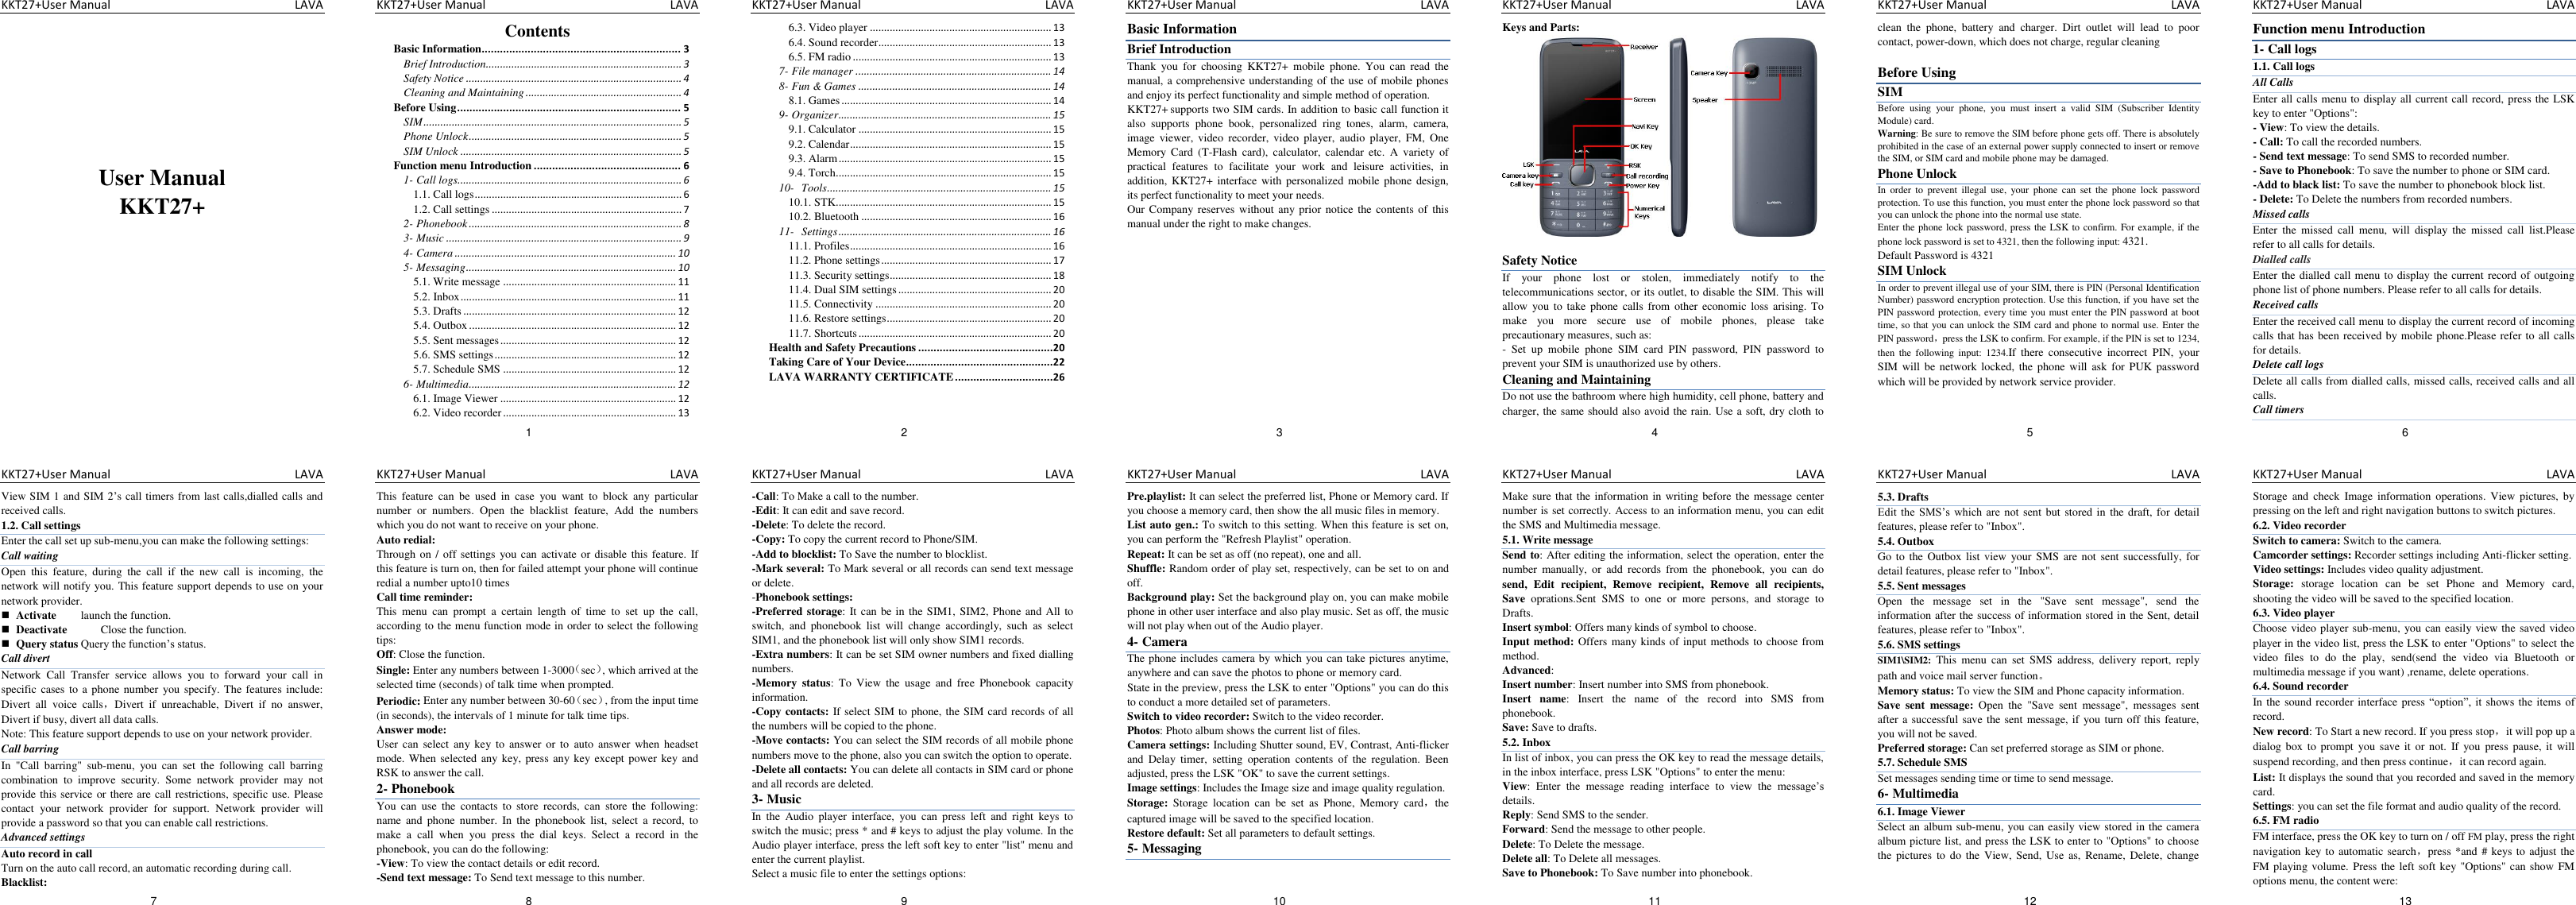 Page 1 of 2 - Lava DF5310 English User Manual 20110315 KKT 27+ - Instruction Kkt27 -en